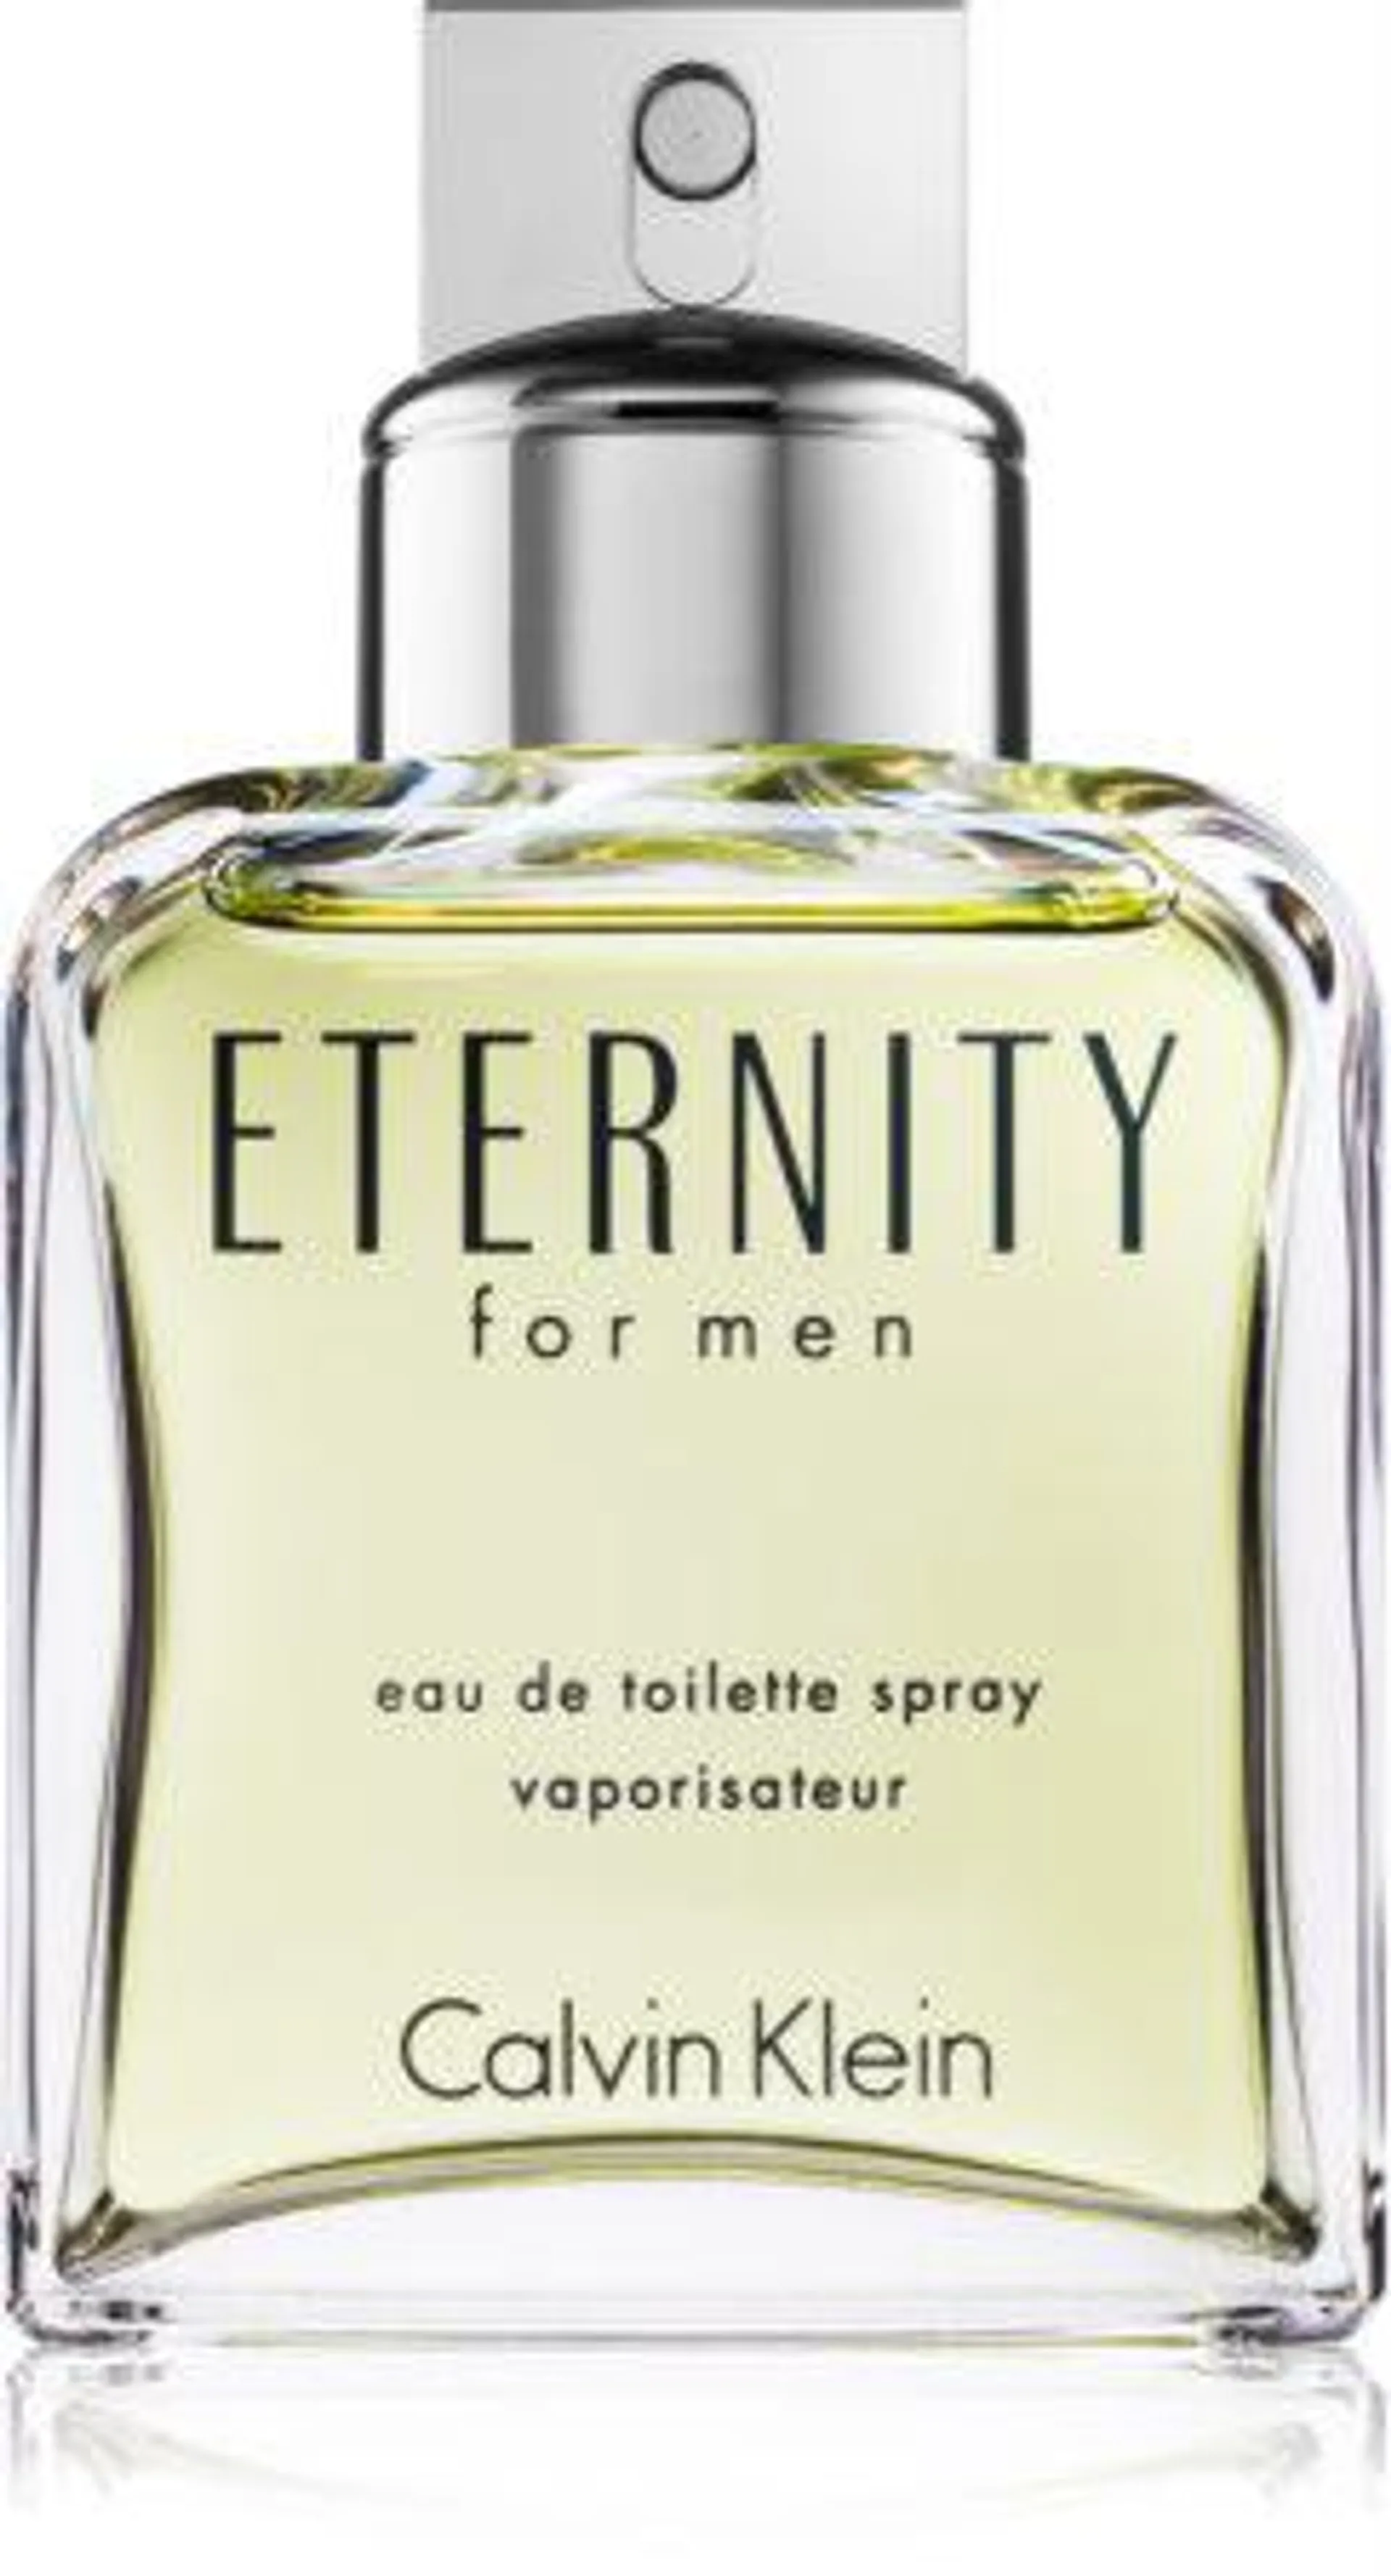 Eternity for Men